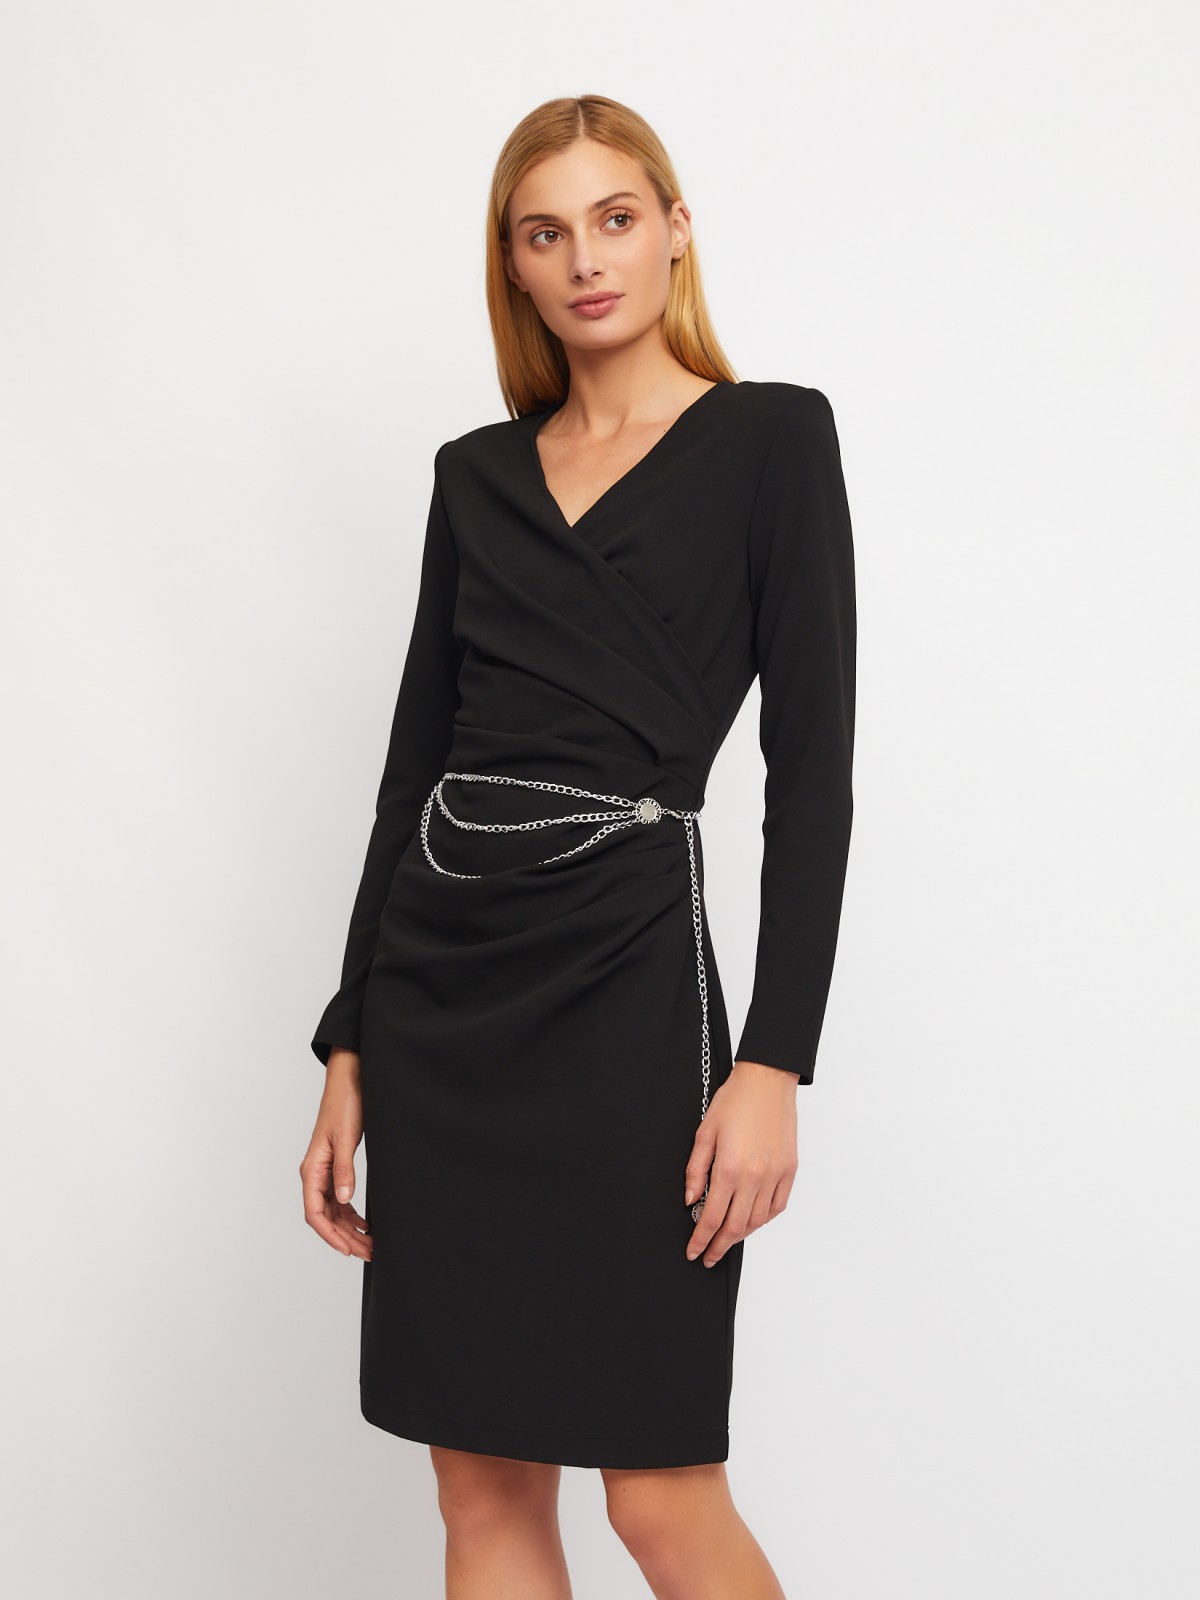 Платье с драпировкой, вырезом на запах и поясом-цепочкой zolla 024118135223, цвет черный, размер XS - фото 1